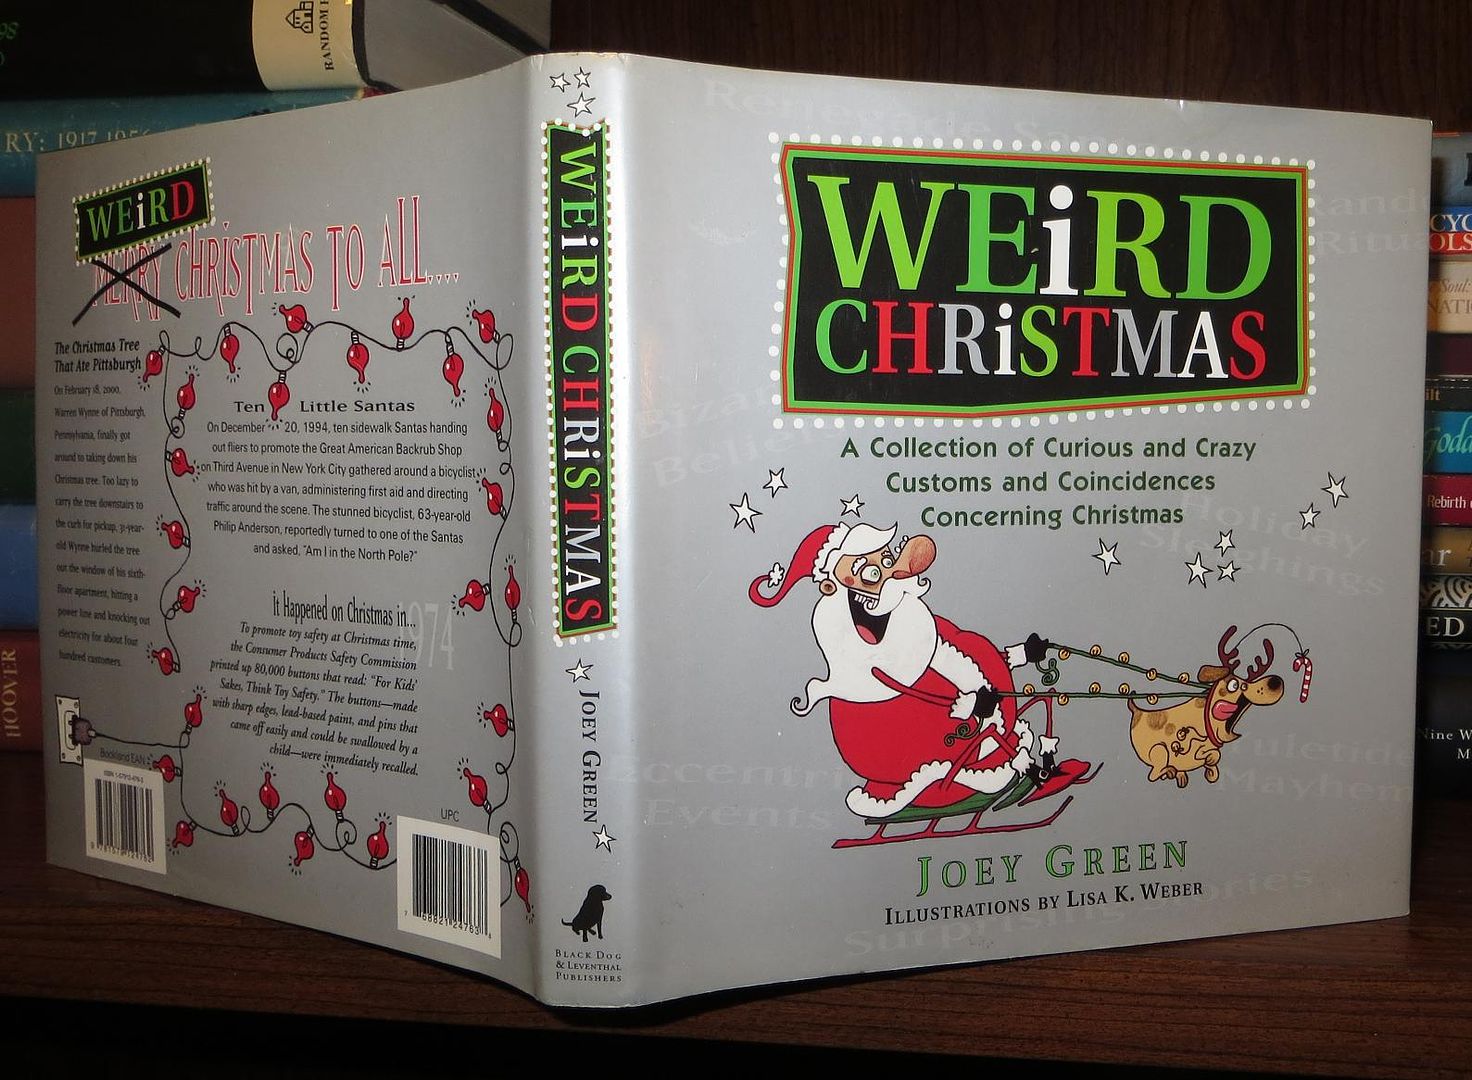 GREEN, JOEY - Weird Christmas